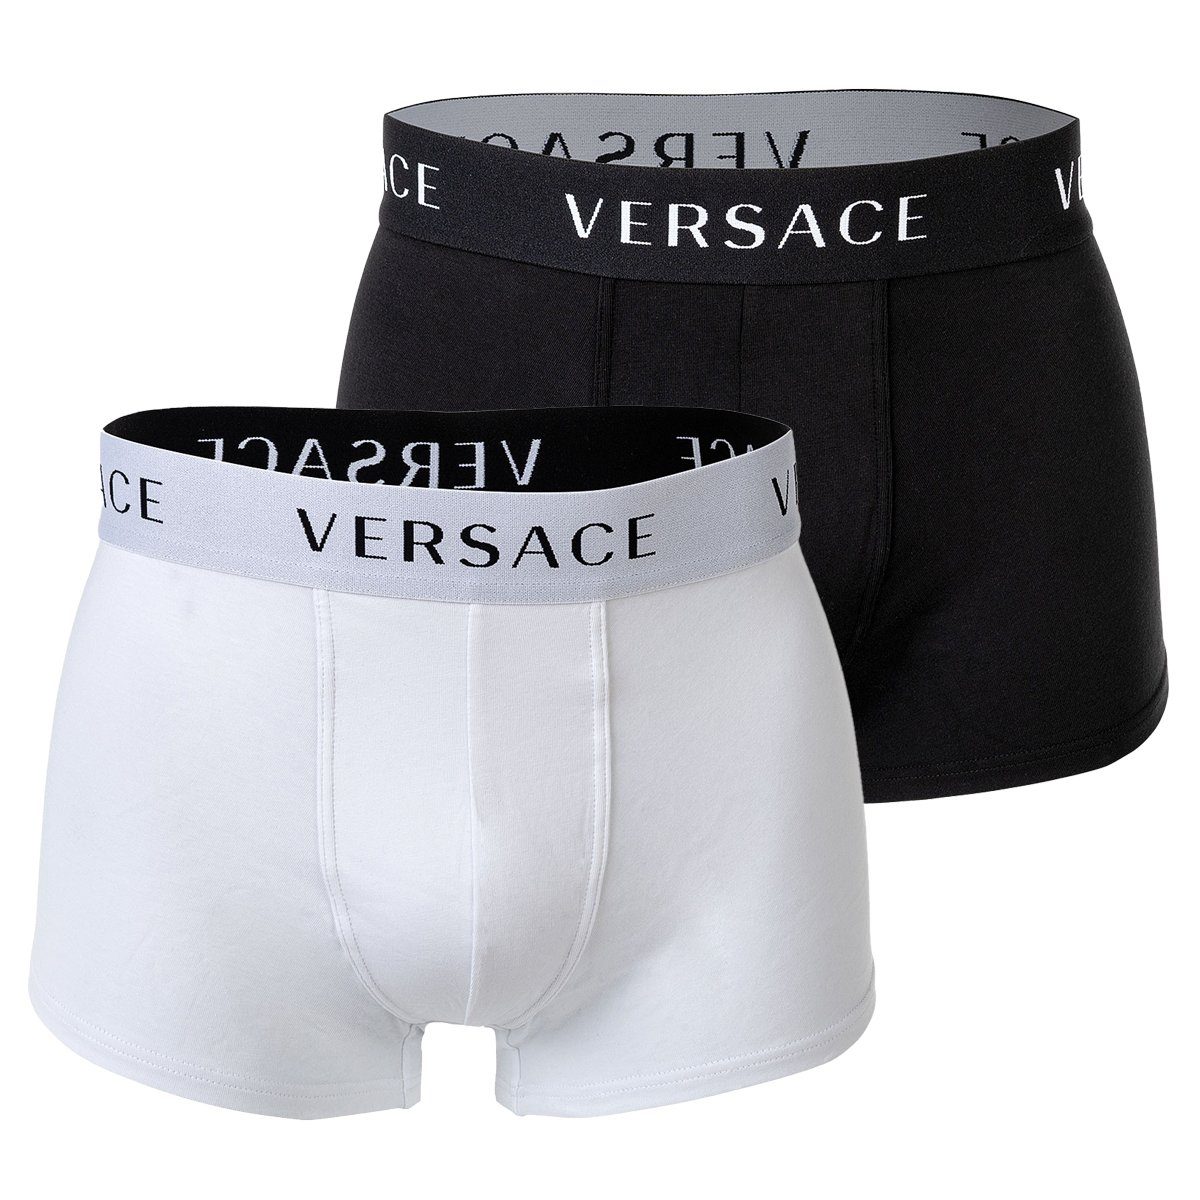 Versace Boxer Herren Boxer Shorts, 2er Pack - Trunk Schwarz/Weiß